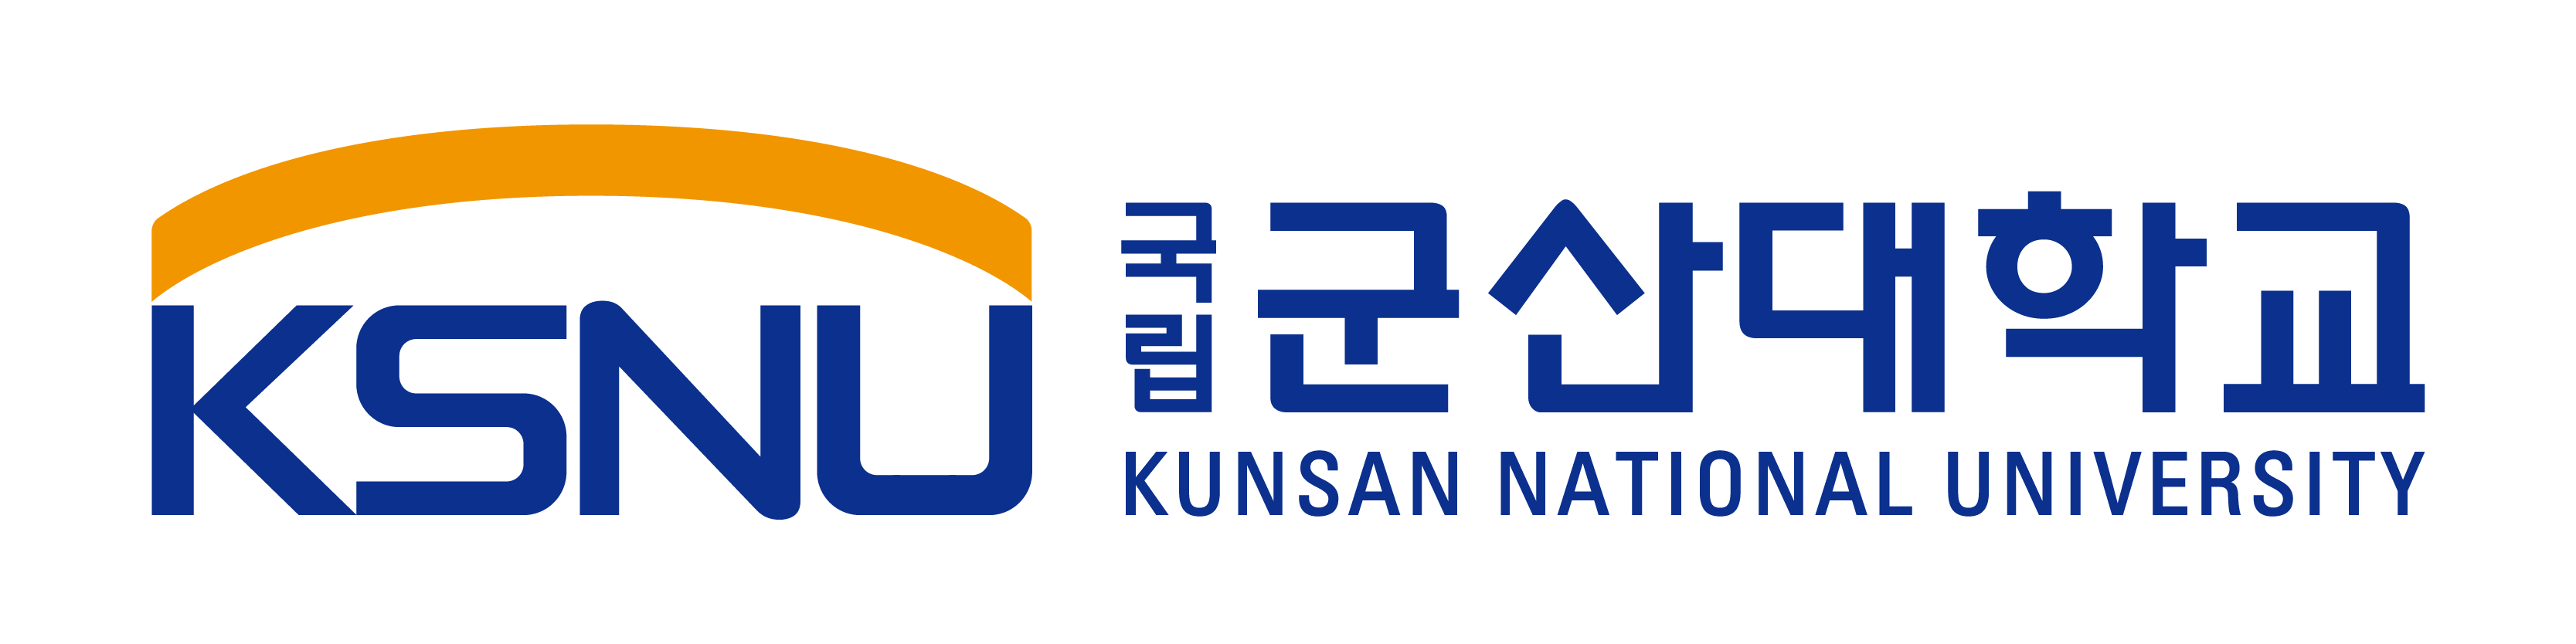 KUNSAN_NATIONAL_UNIVERCITY_CI